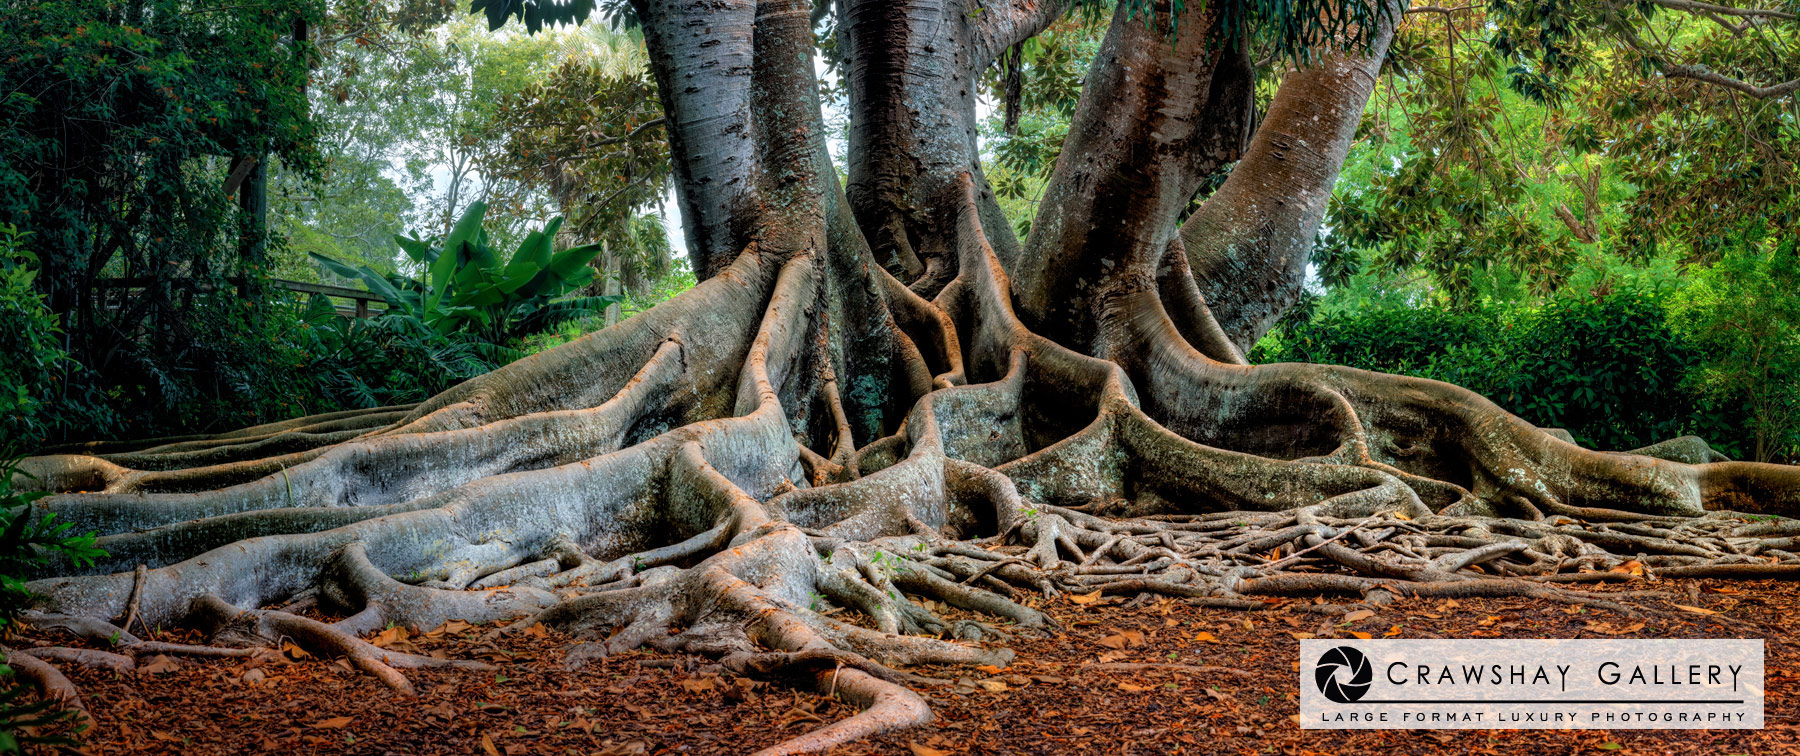 Close up of large format photograph of Florida banyan tree